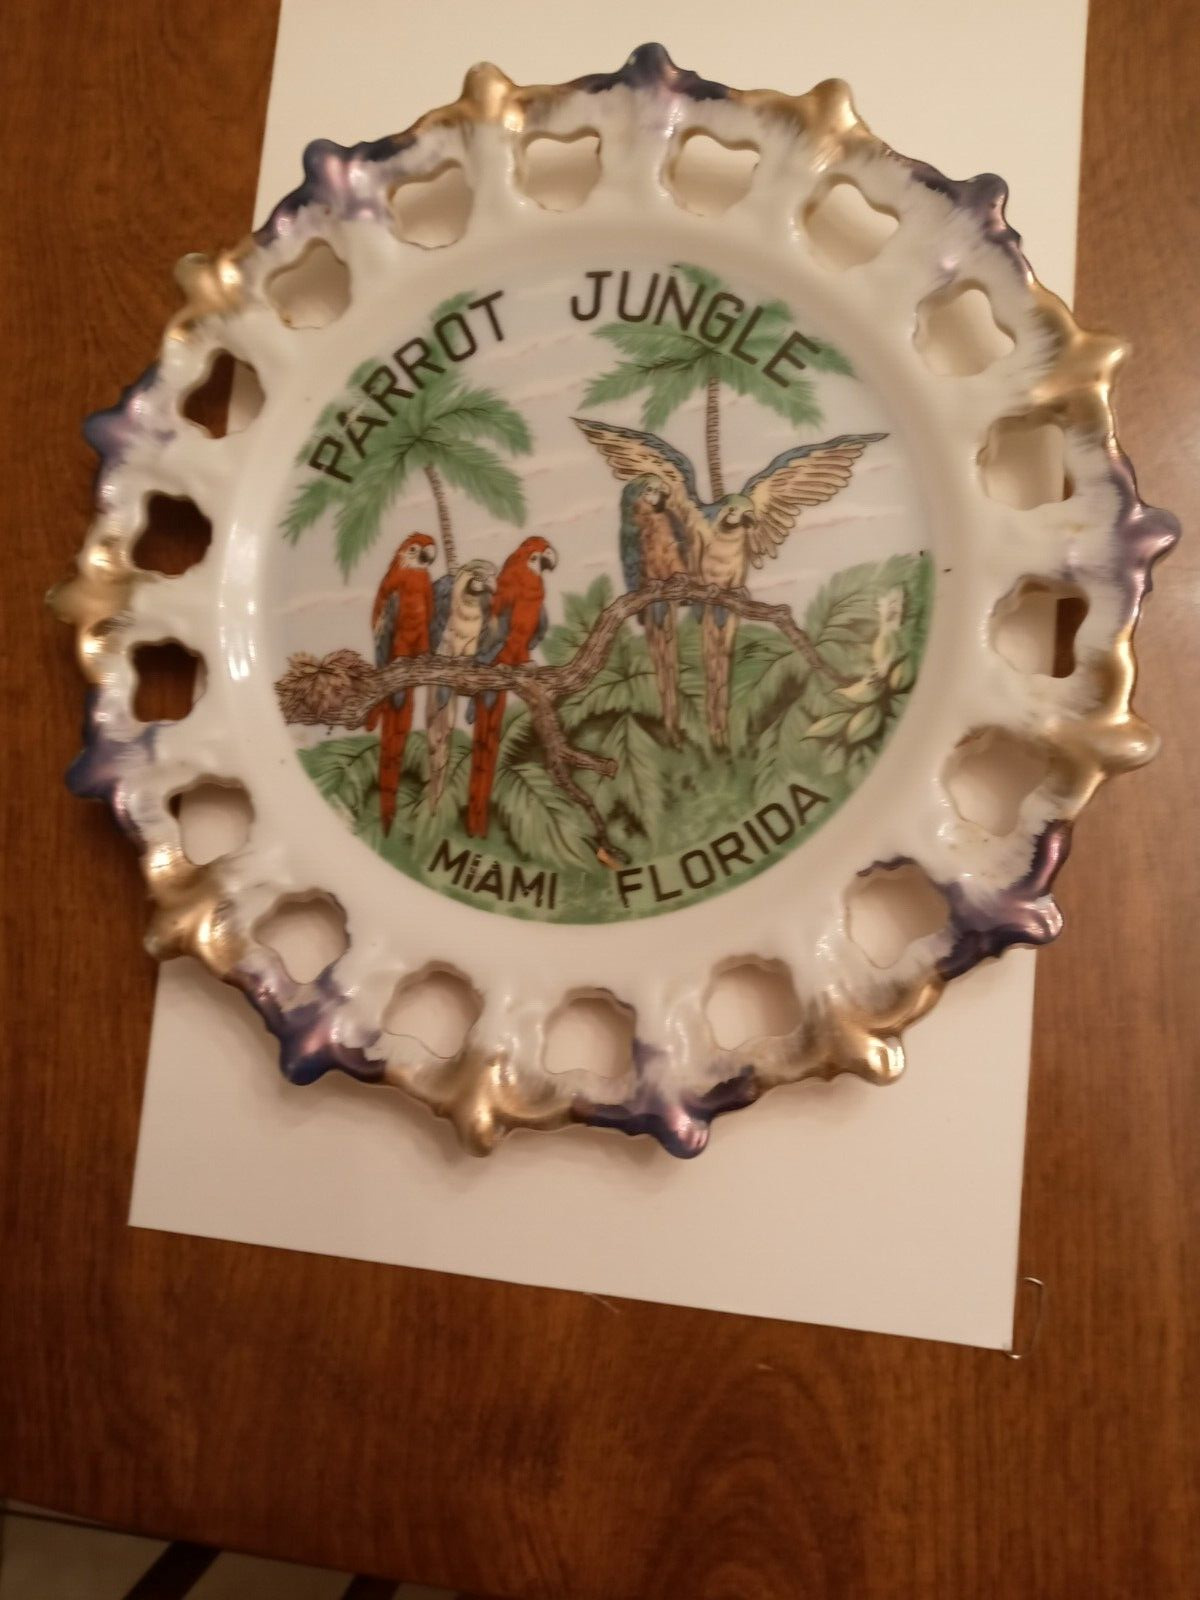 C1960s Souvenir decorative plate Parrot Jungle Miami Florida